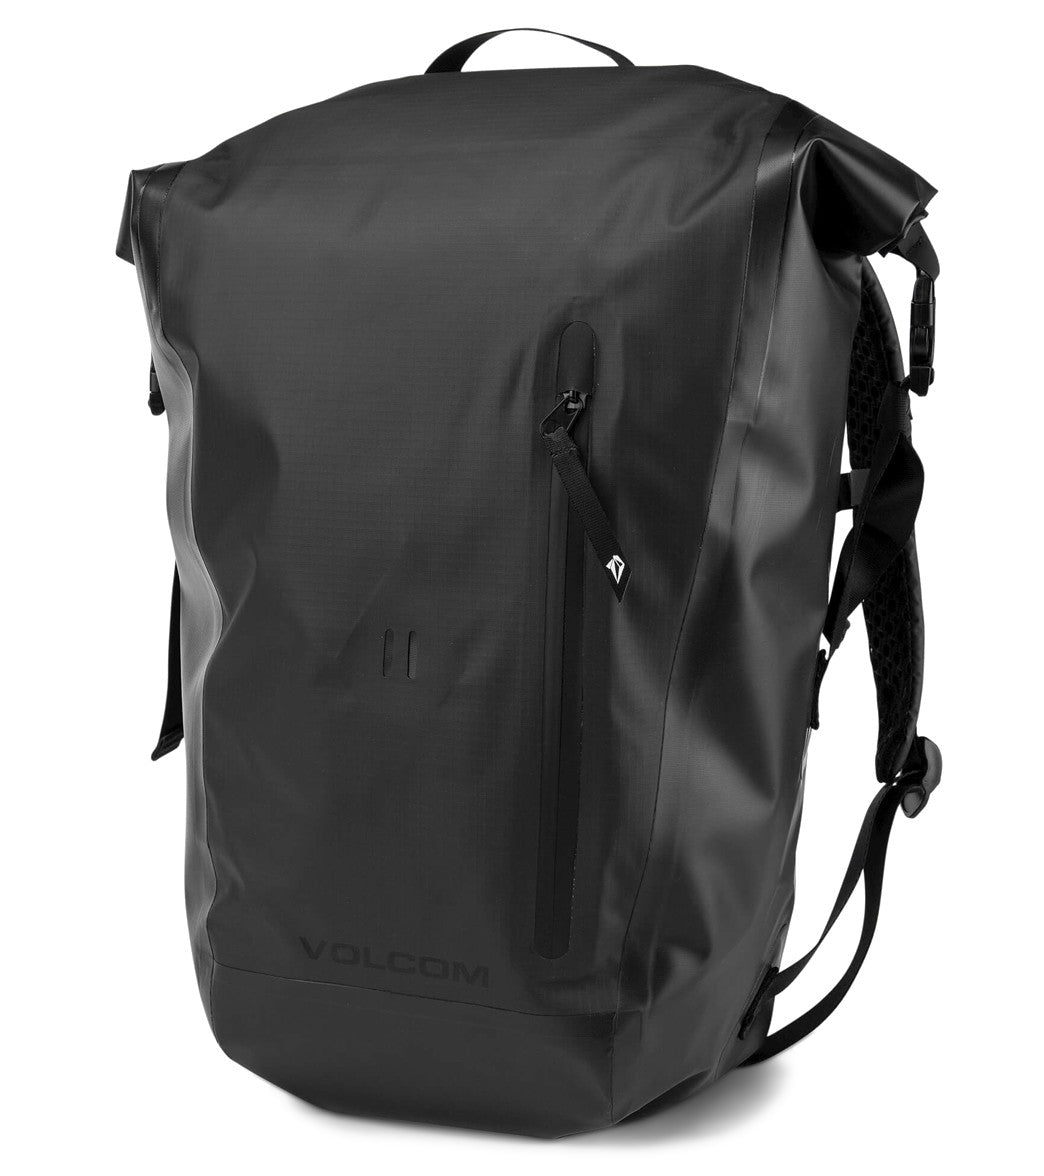 Backpack strap mod.mov 